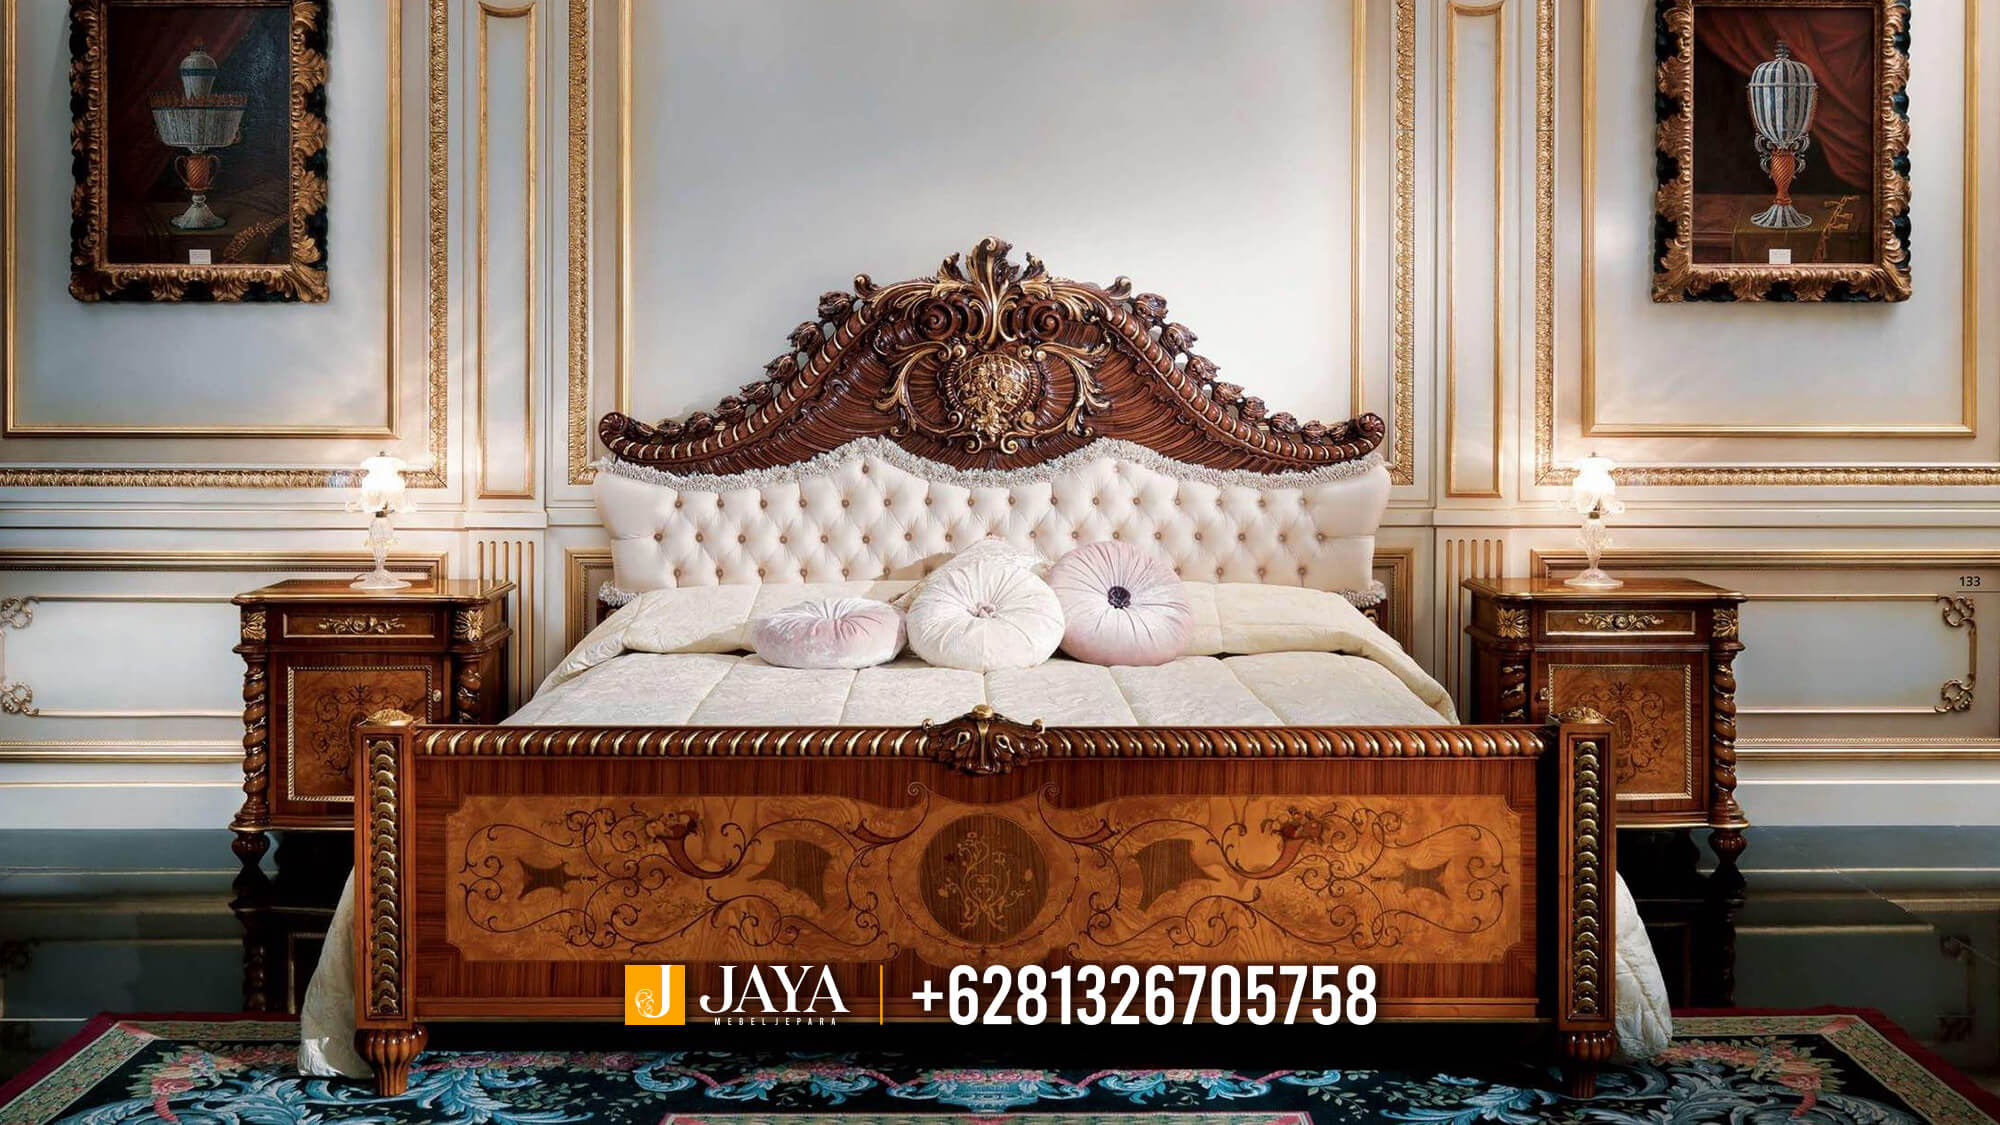 Desain Tempat Tidur Mewah Luxury Carving Jepara New Style JM710